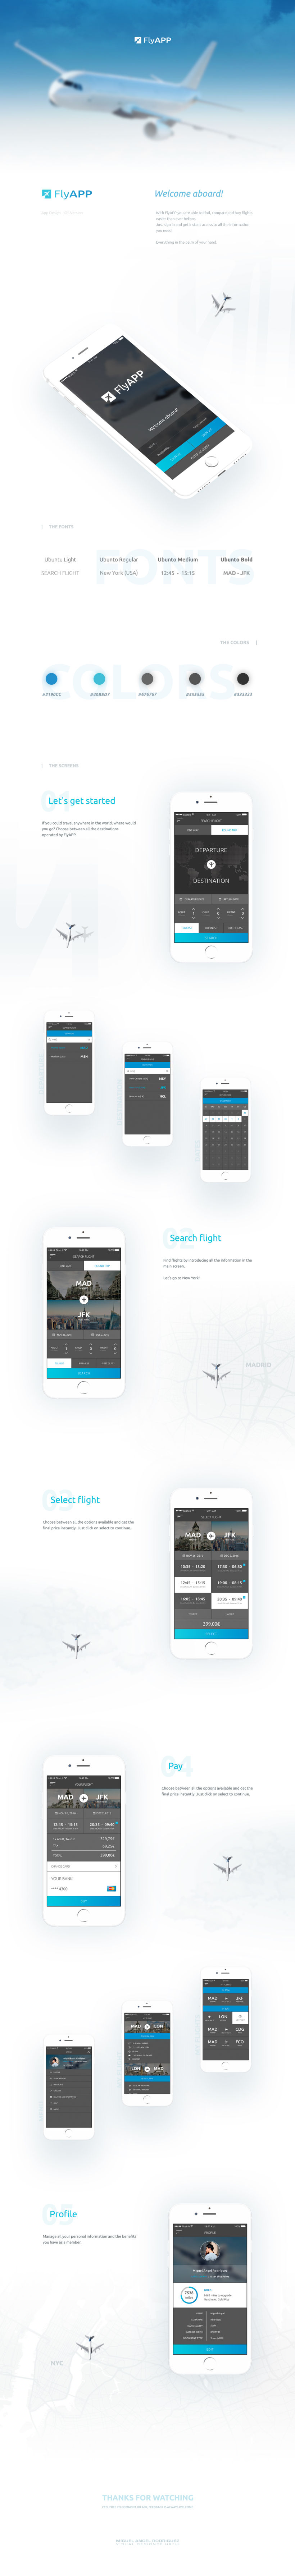 FlyAPP - App Design 0